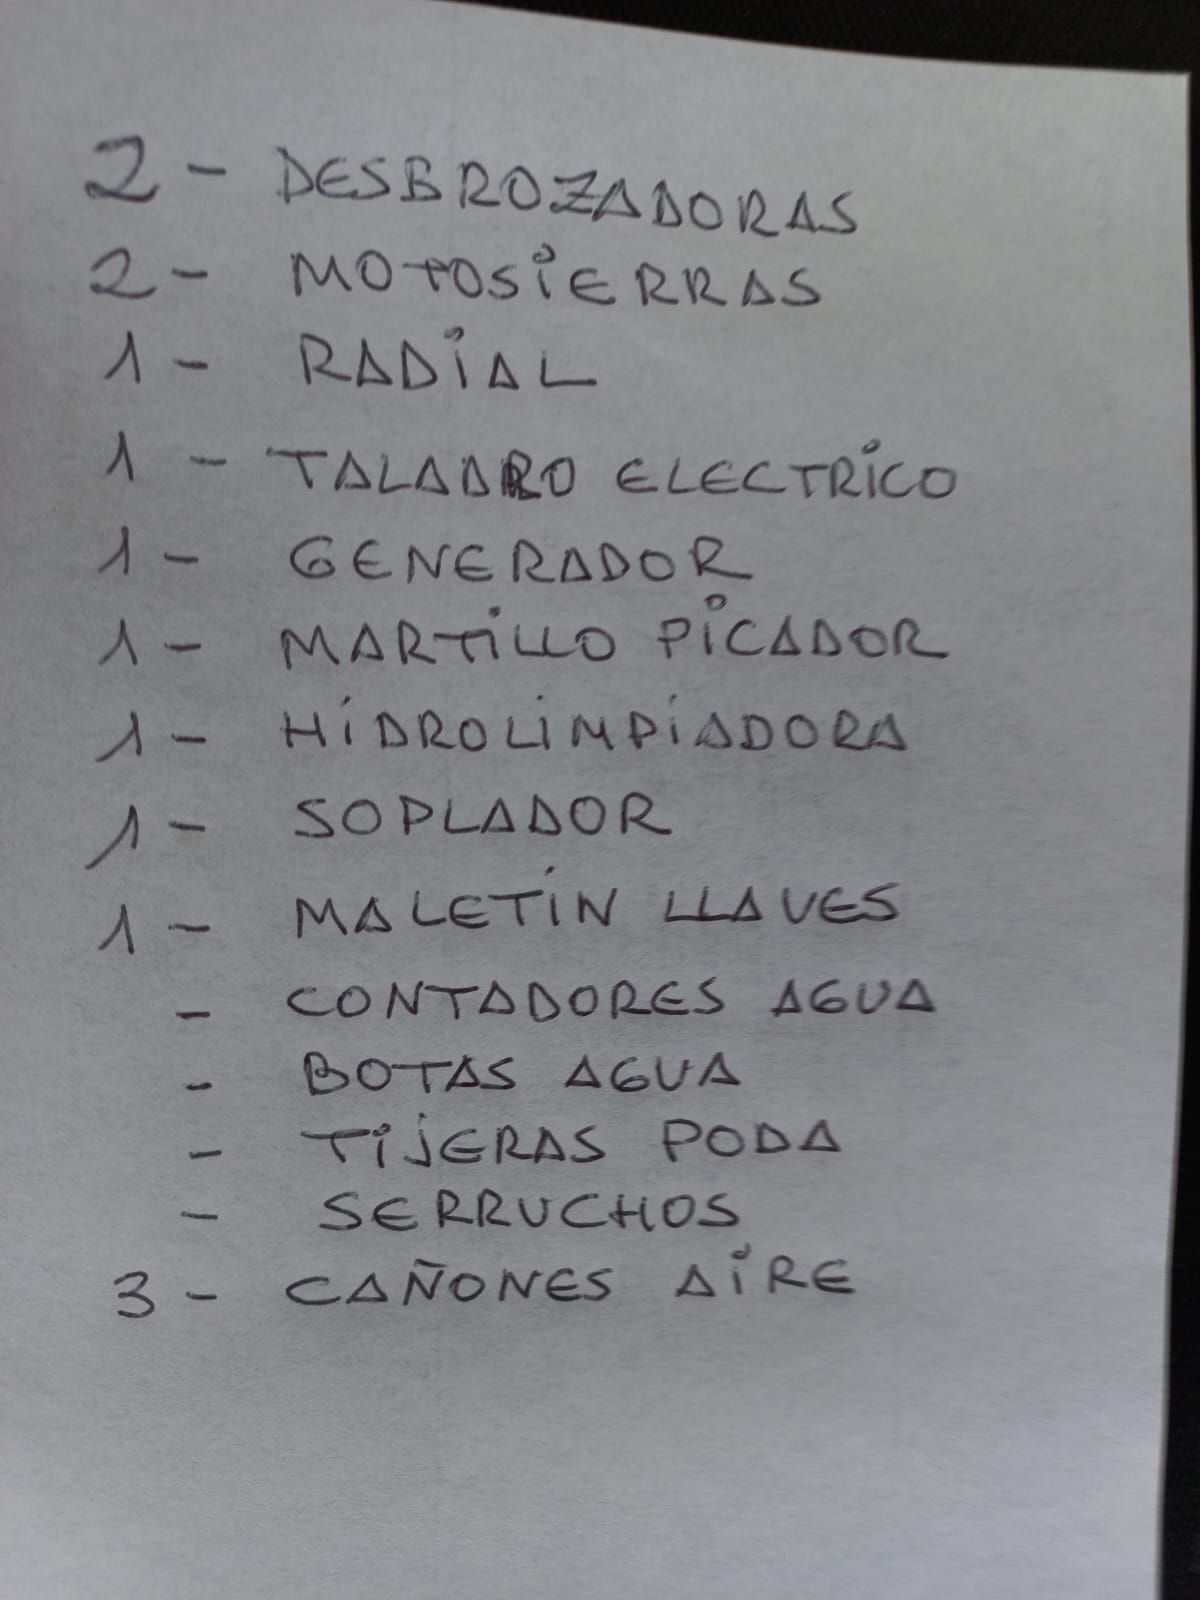 La lista de los objetos robados en las dependencias municipales de Alacón.